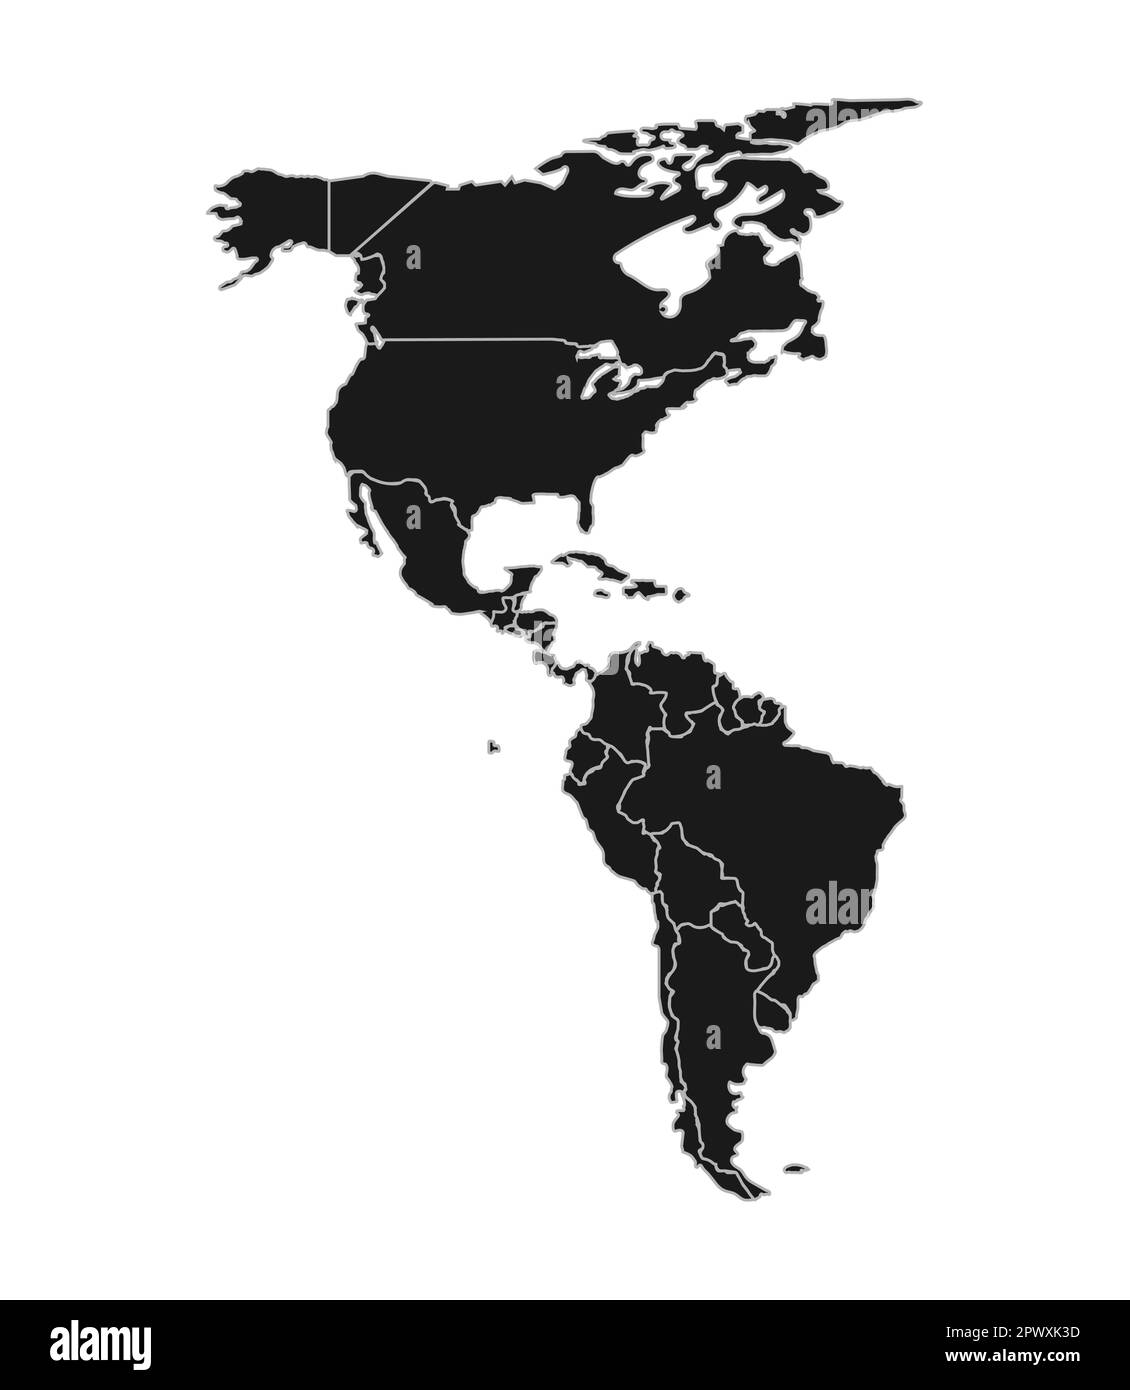 Karte von Nord- und Südamerika in Schwarz. Karte des amerikanischen Kontinents mit Ländergrenzen auf weißem Hintergrund. Vektor Stock Vektor